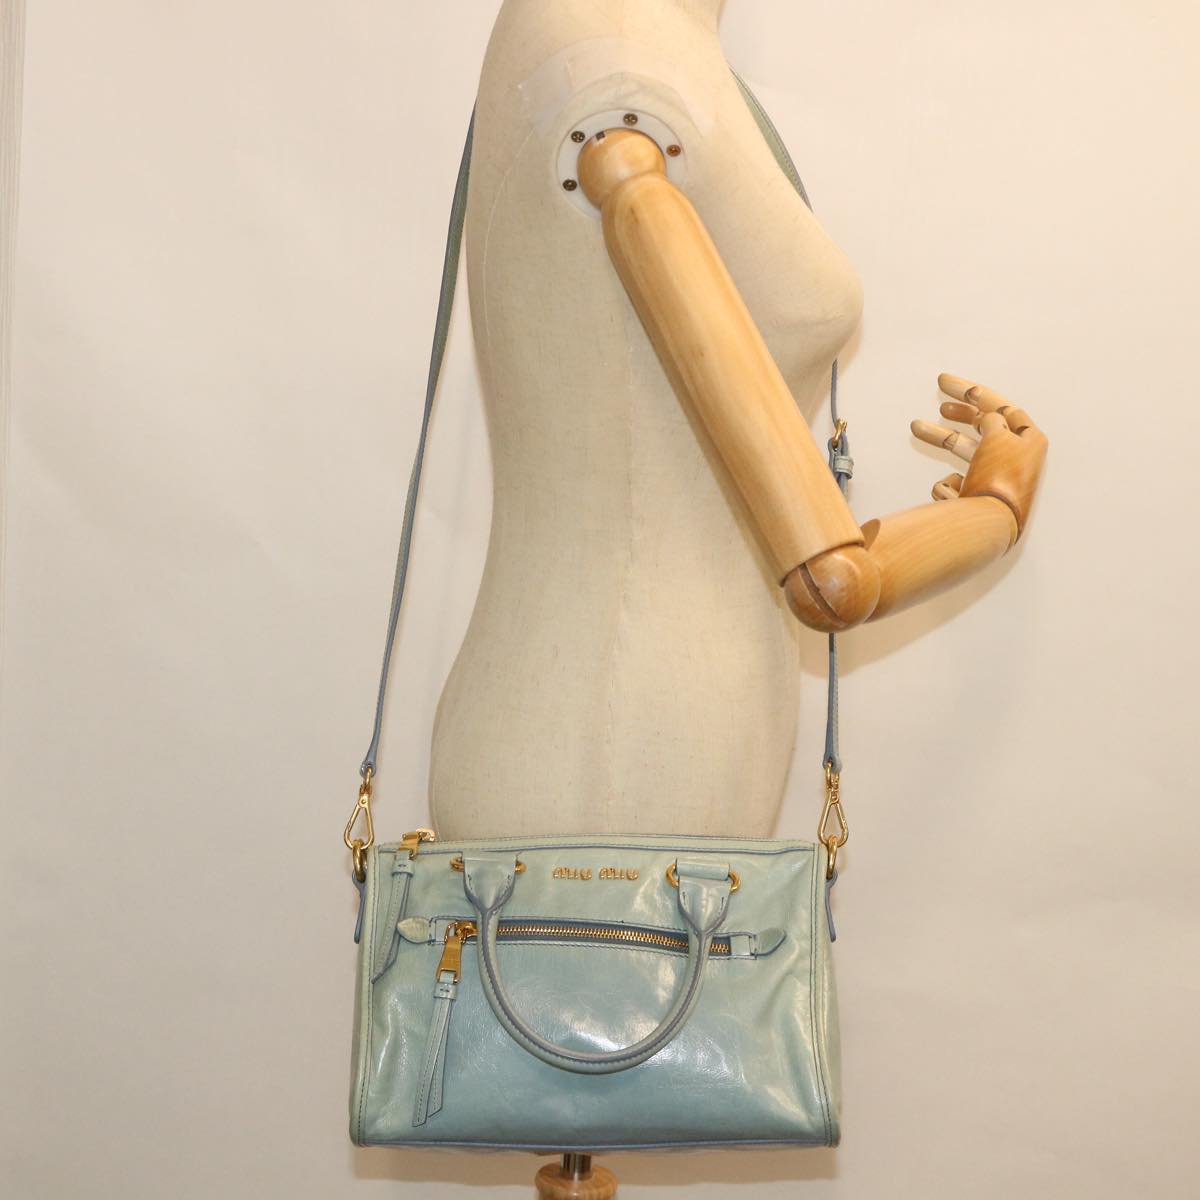 Miu Miu Hand Bag Leather 2way Light Blue Auth yk8808